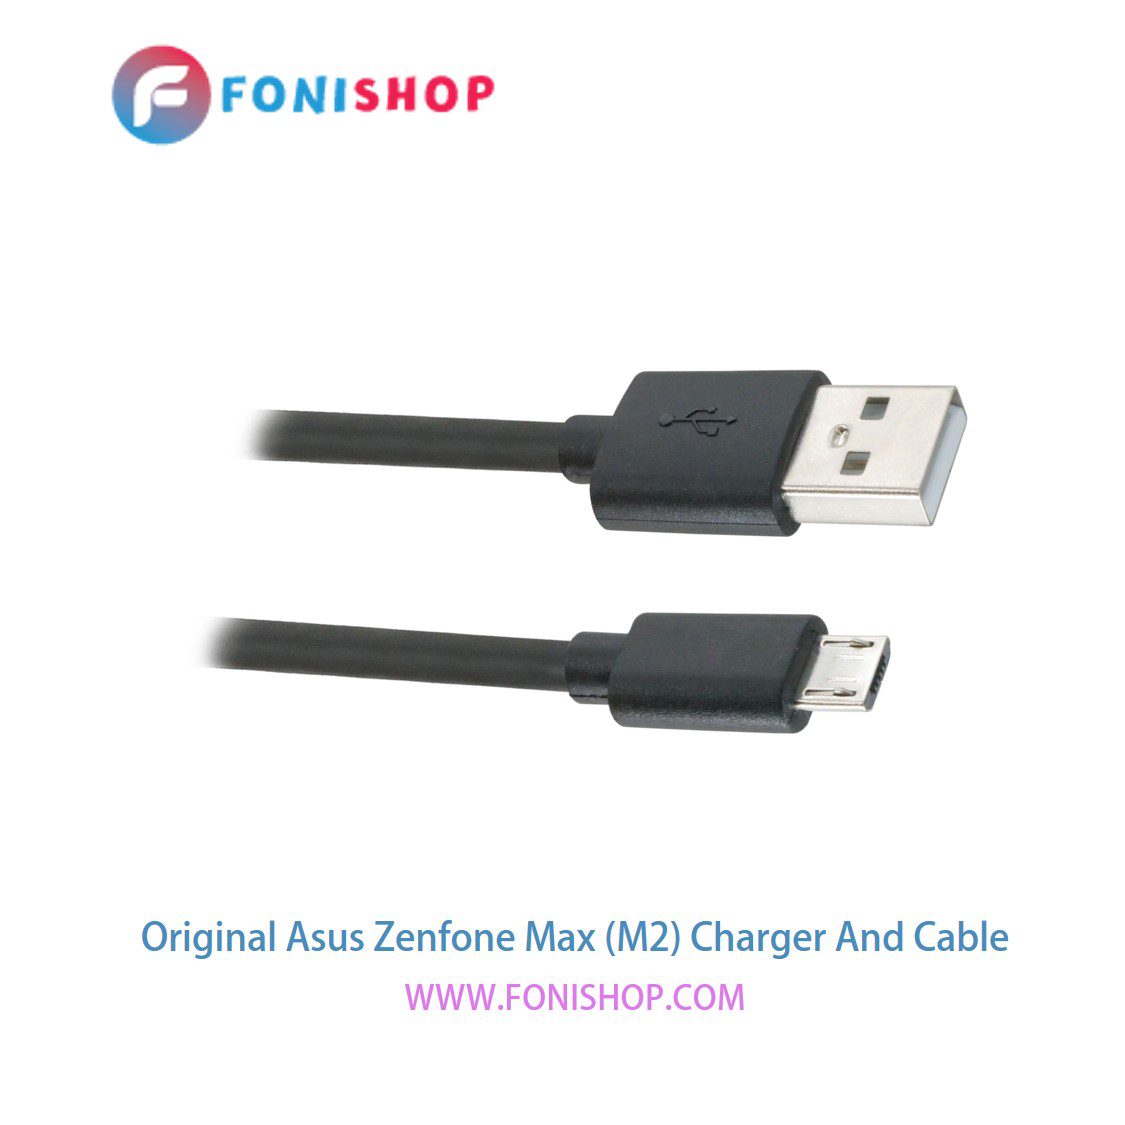 کابل شارژ و آداپتور (کلگی-سری) فست شارژ اصلی گوشی ایسوس زنفون مکس ام 2 / Asus Zenfone Max (M2)